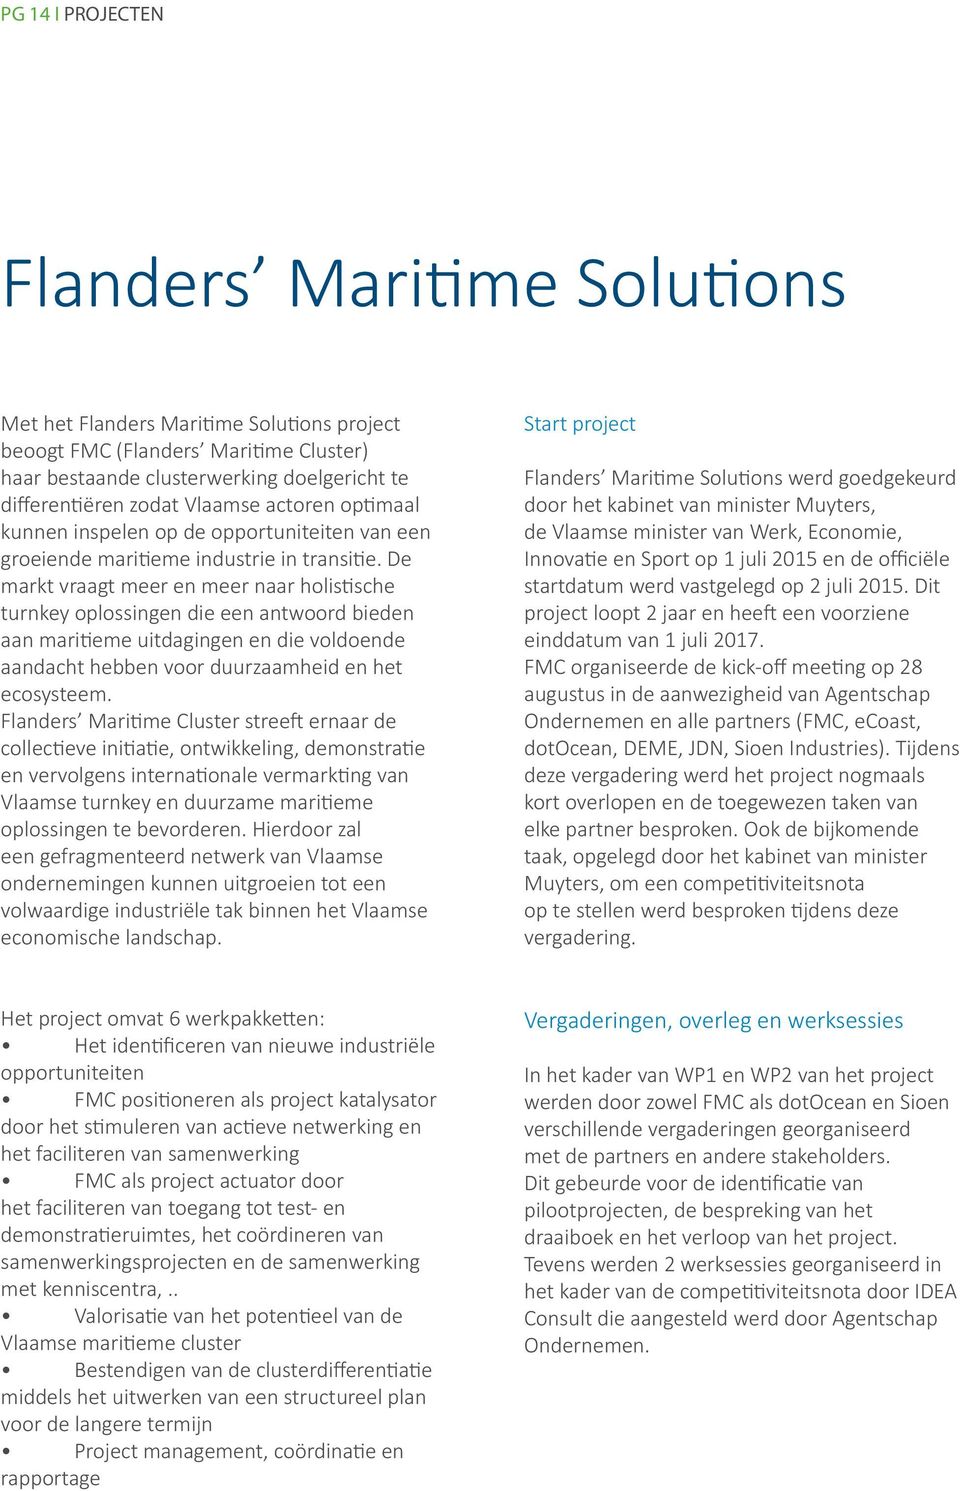 De markt vraagt meer en meer naar holistische turnkey oplossingen die een antwoord bieden aan maritieme uitdagingen en die voldoende aandacht hebben voor duurzaamheid en het ecosysteem.